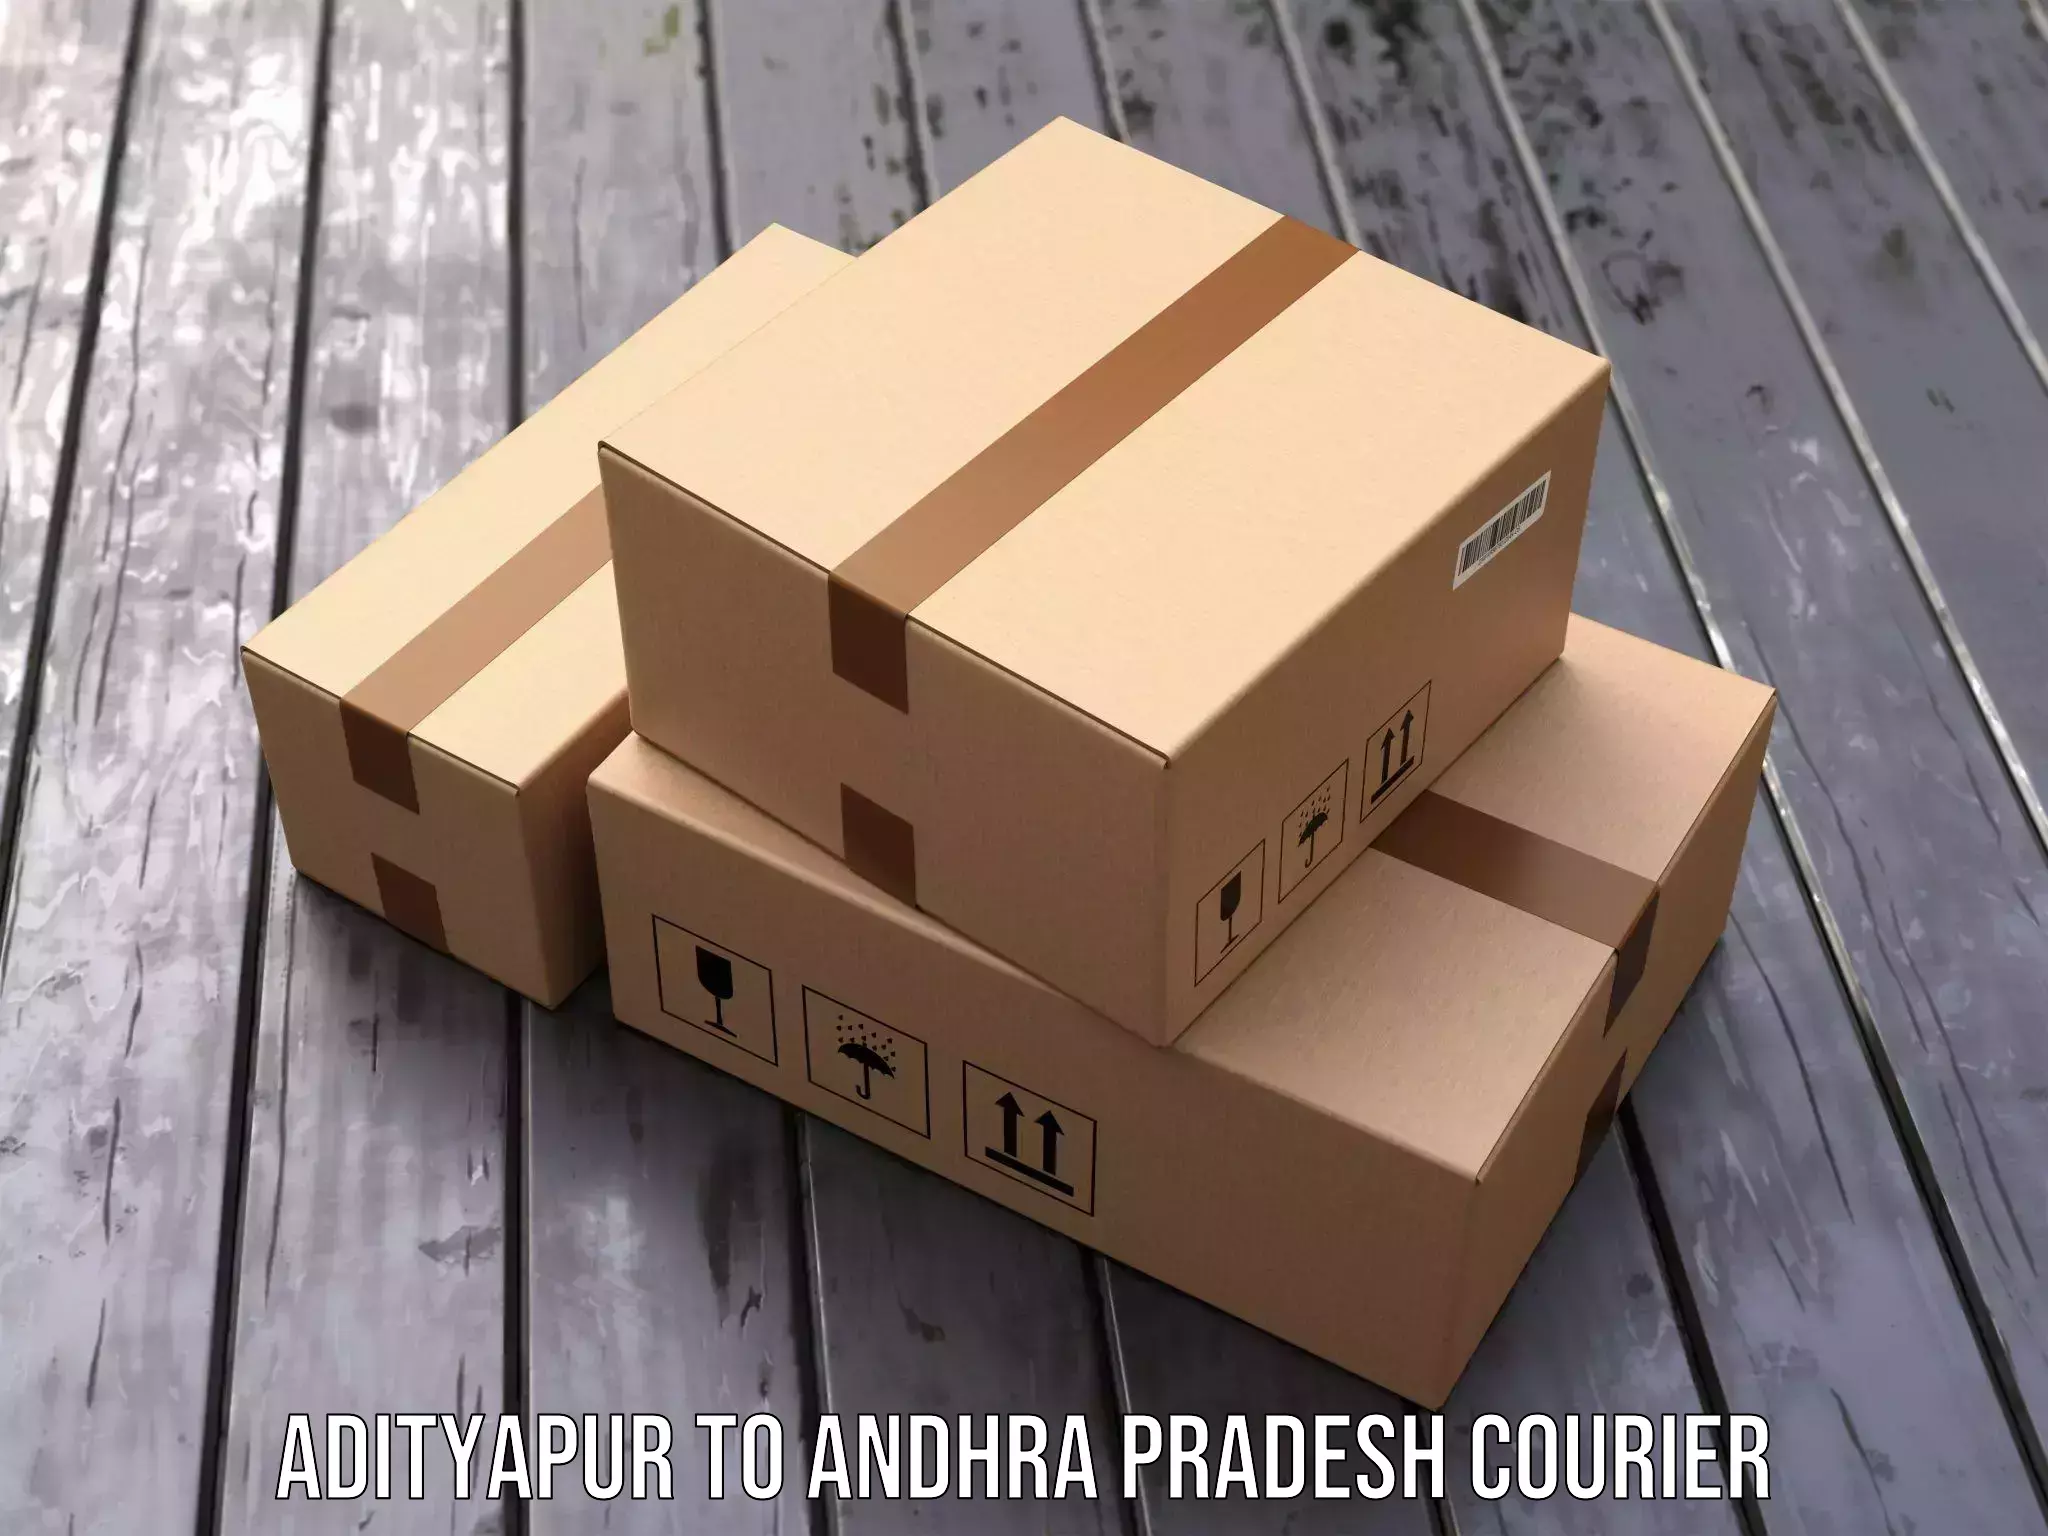 Express package handling Adityapur to Narsipatnam